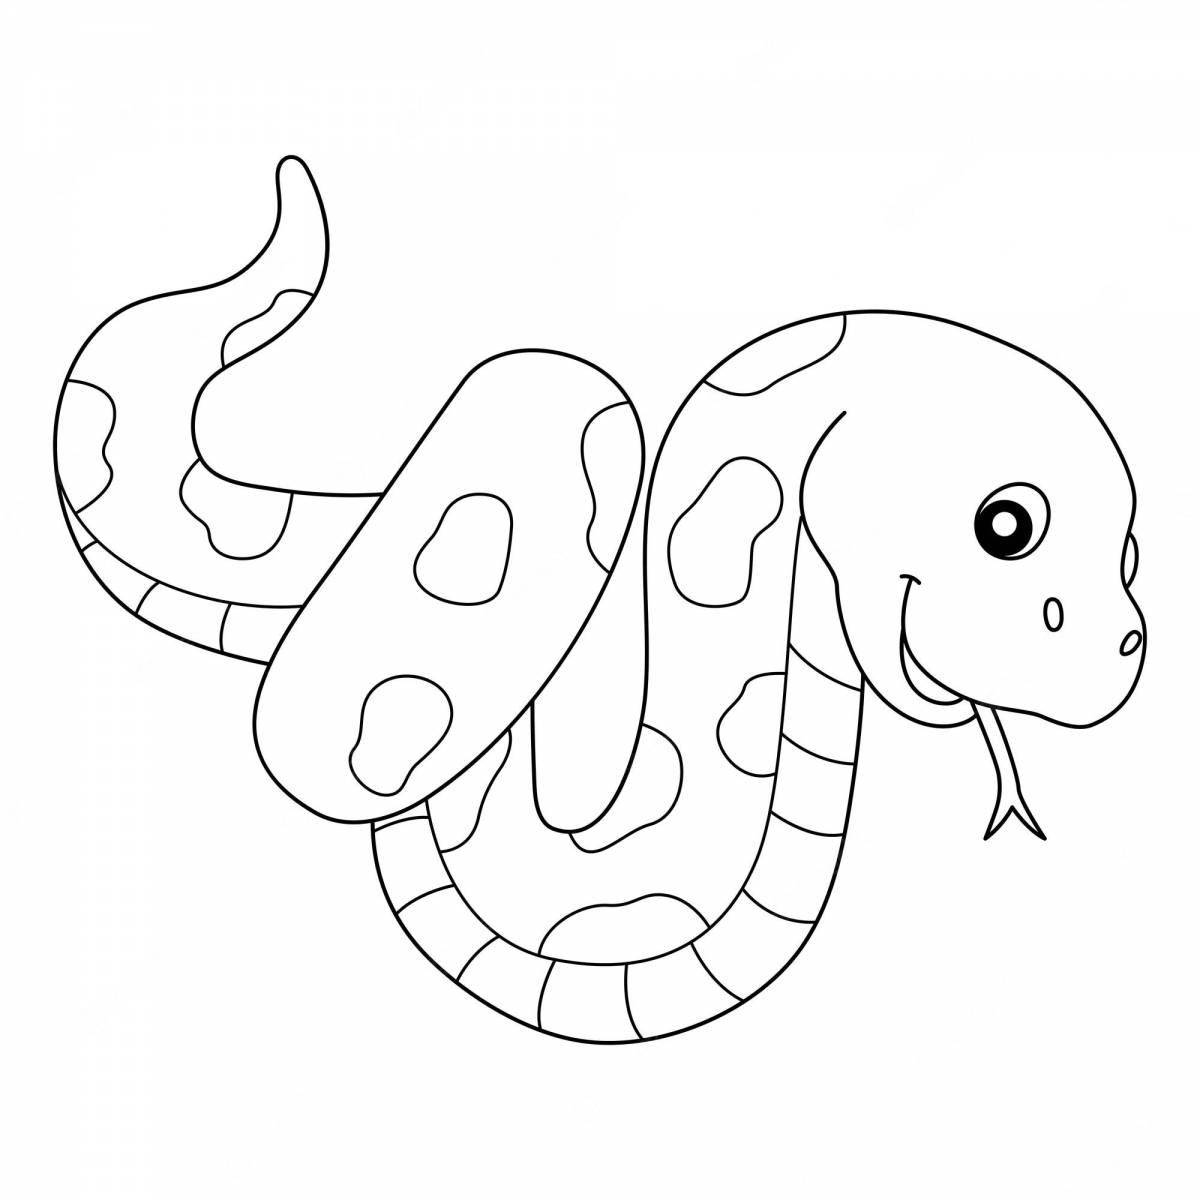 Замысловатая змея по номерам раскраски